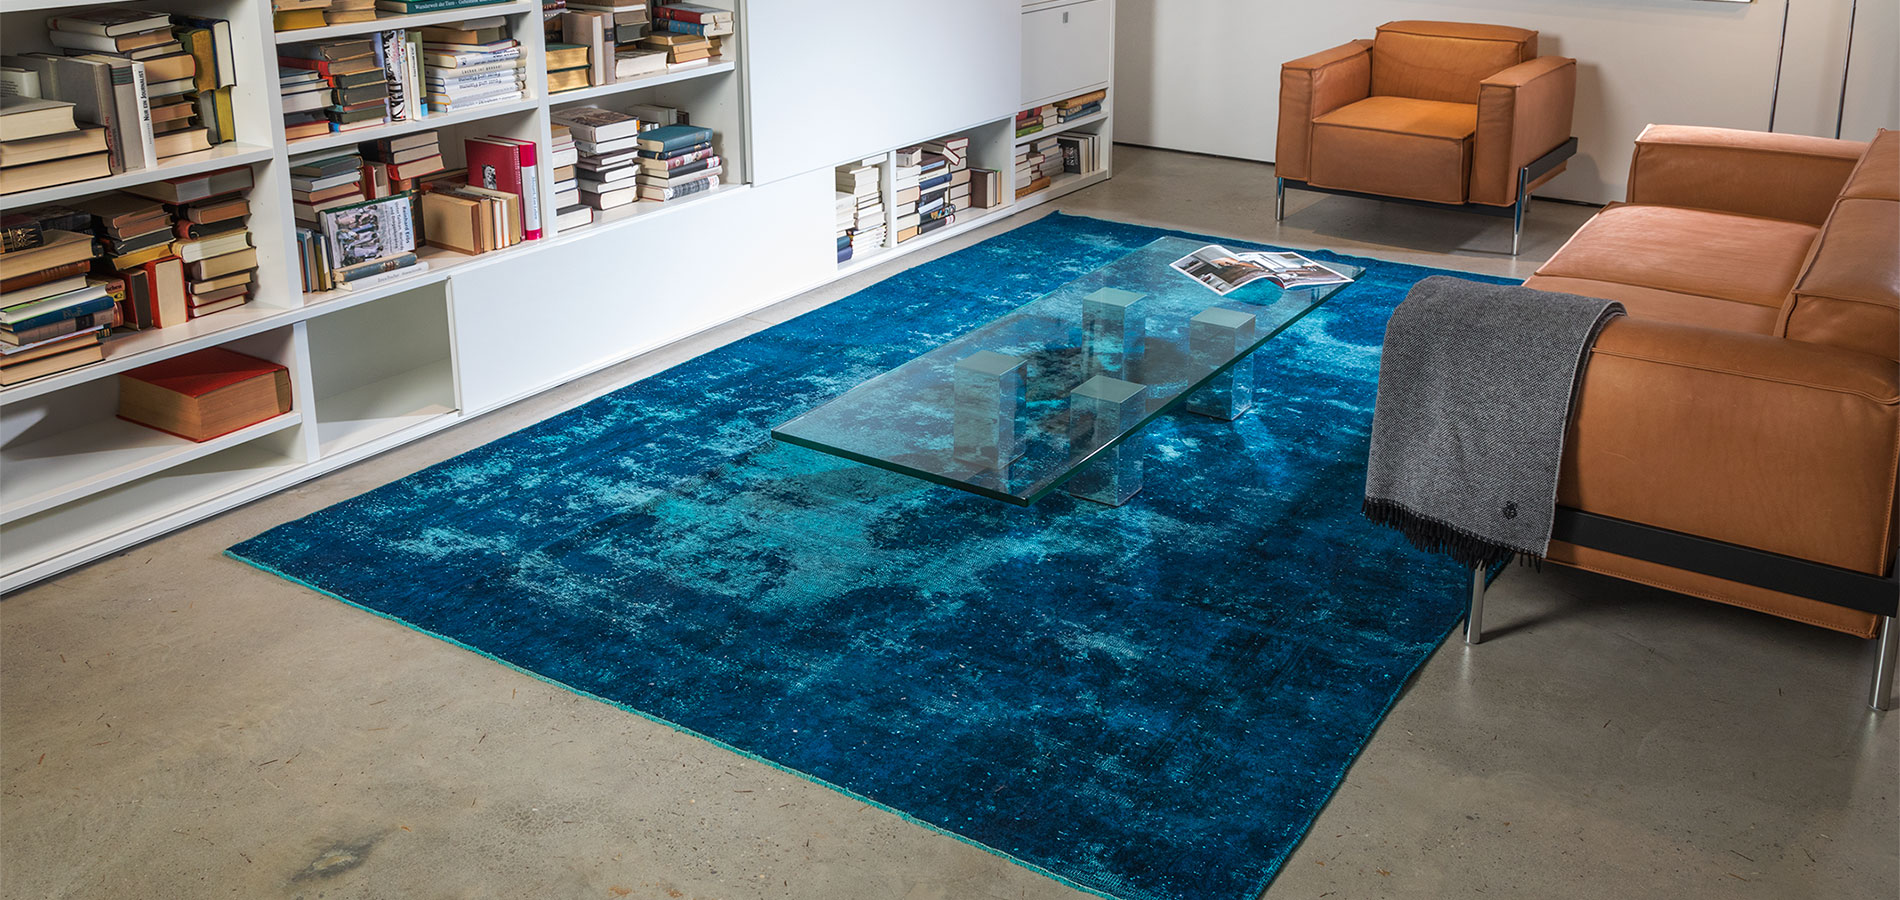 Teppich Bodenschätze von der Teppichfirma remade I Persian Art - Design Teppich Kollektion by Ewald Beyer I München I Deutschland